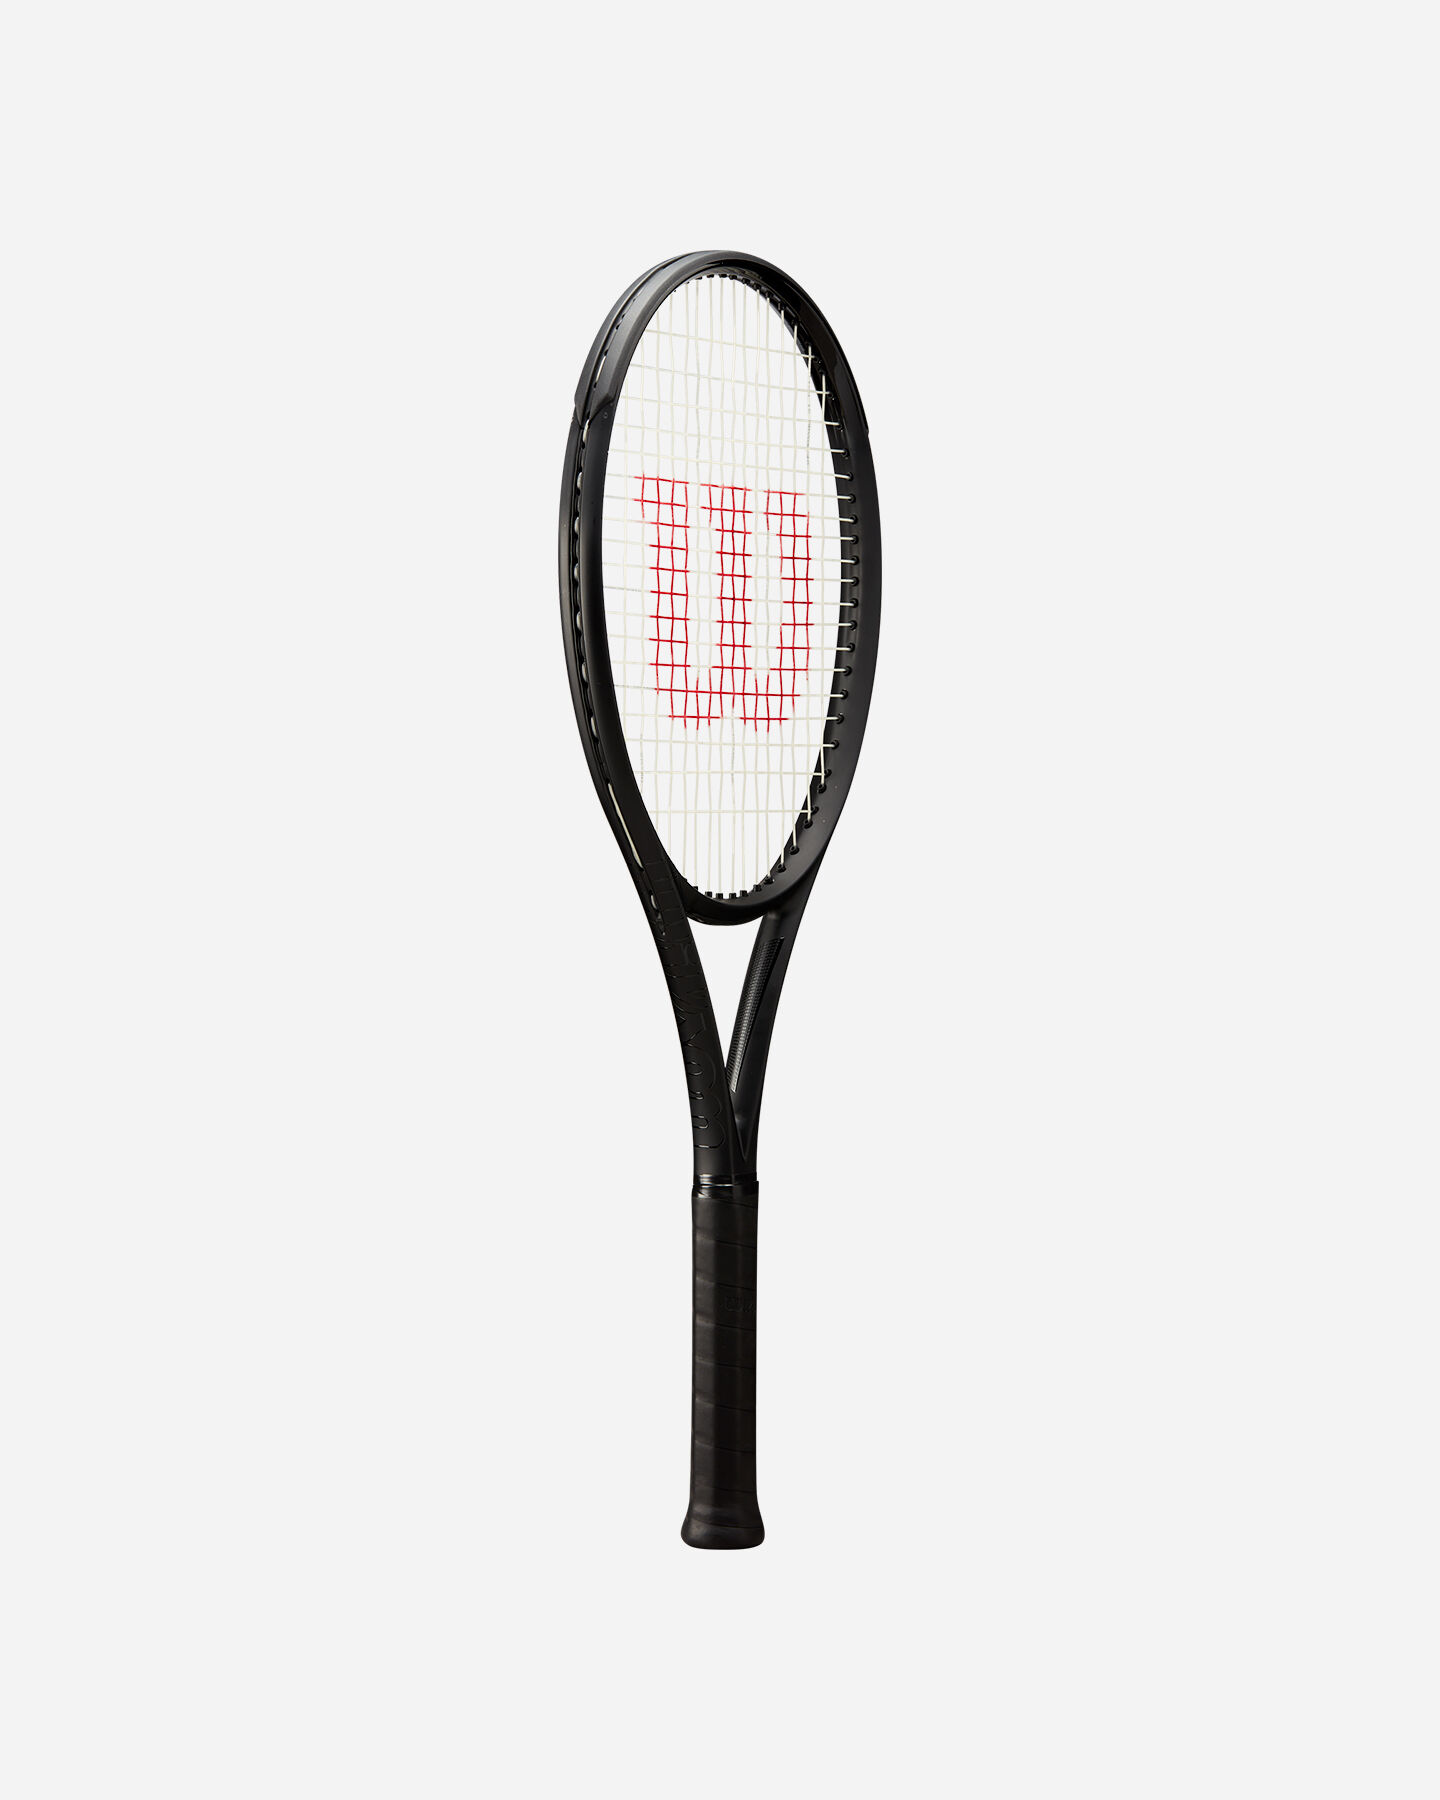  Racchetta tennis WILSON NOIR ULTRA 100 V4  S5635039|UNI|3 scatto 1